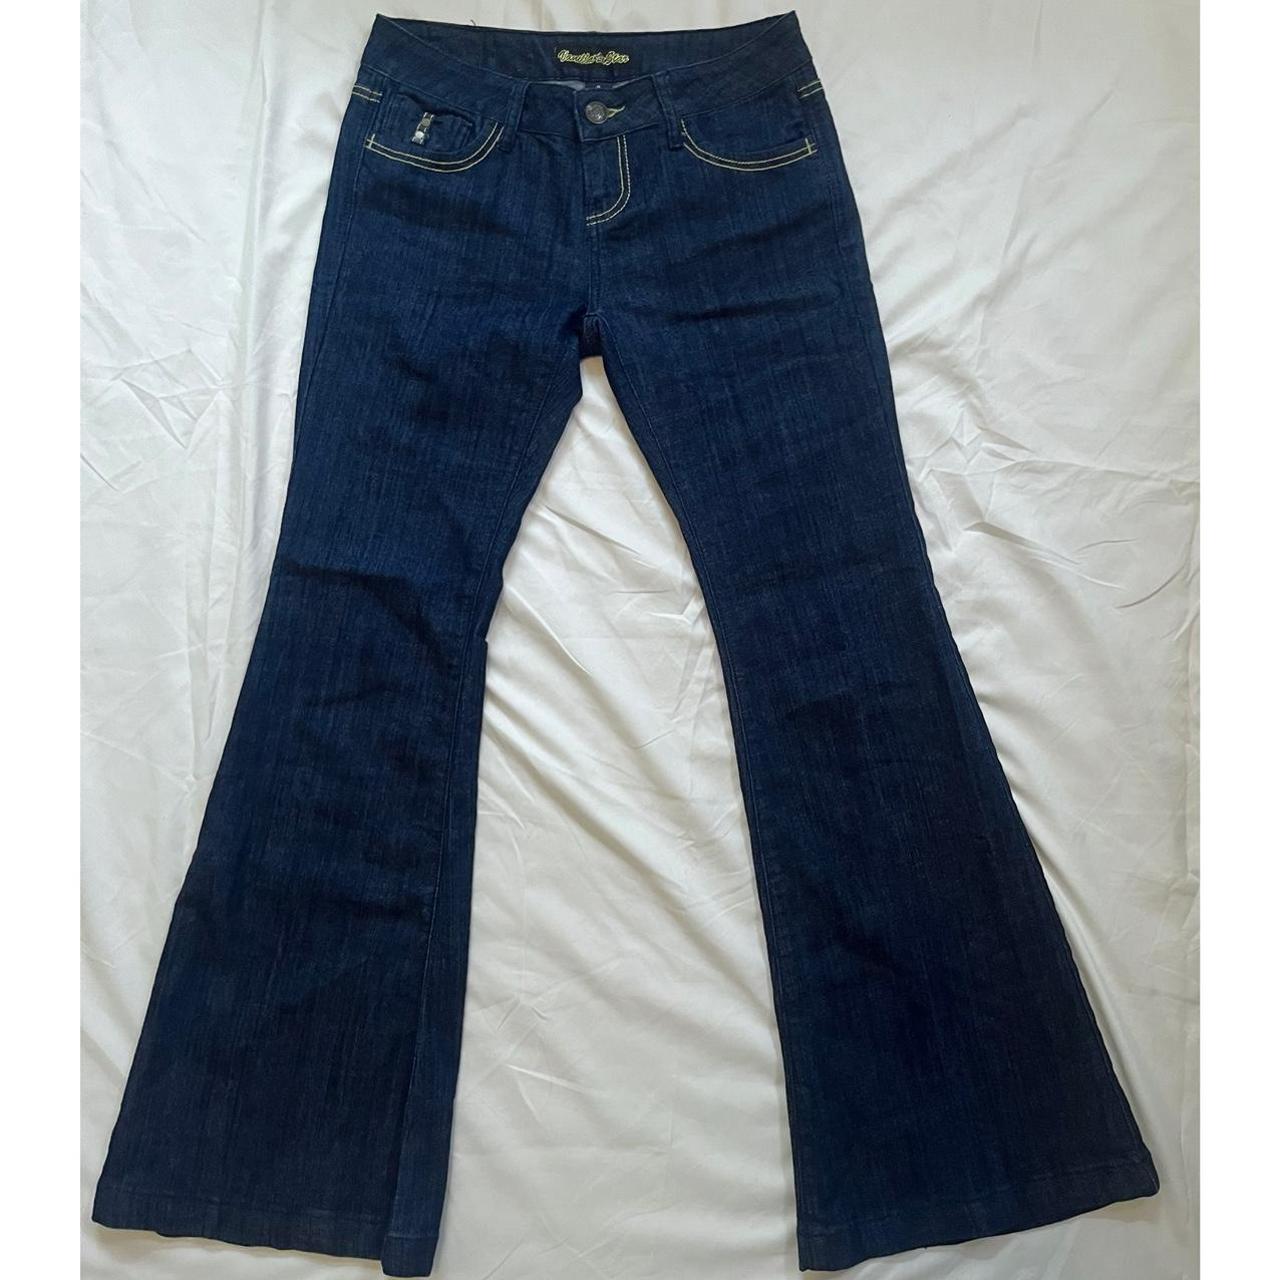 Vanilla Star Butterfly Jeans Size 9 W = 15’ L =... - Depop